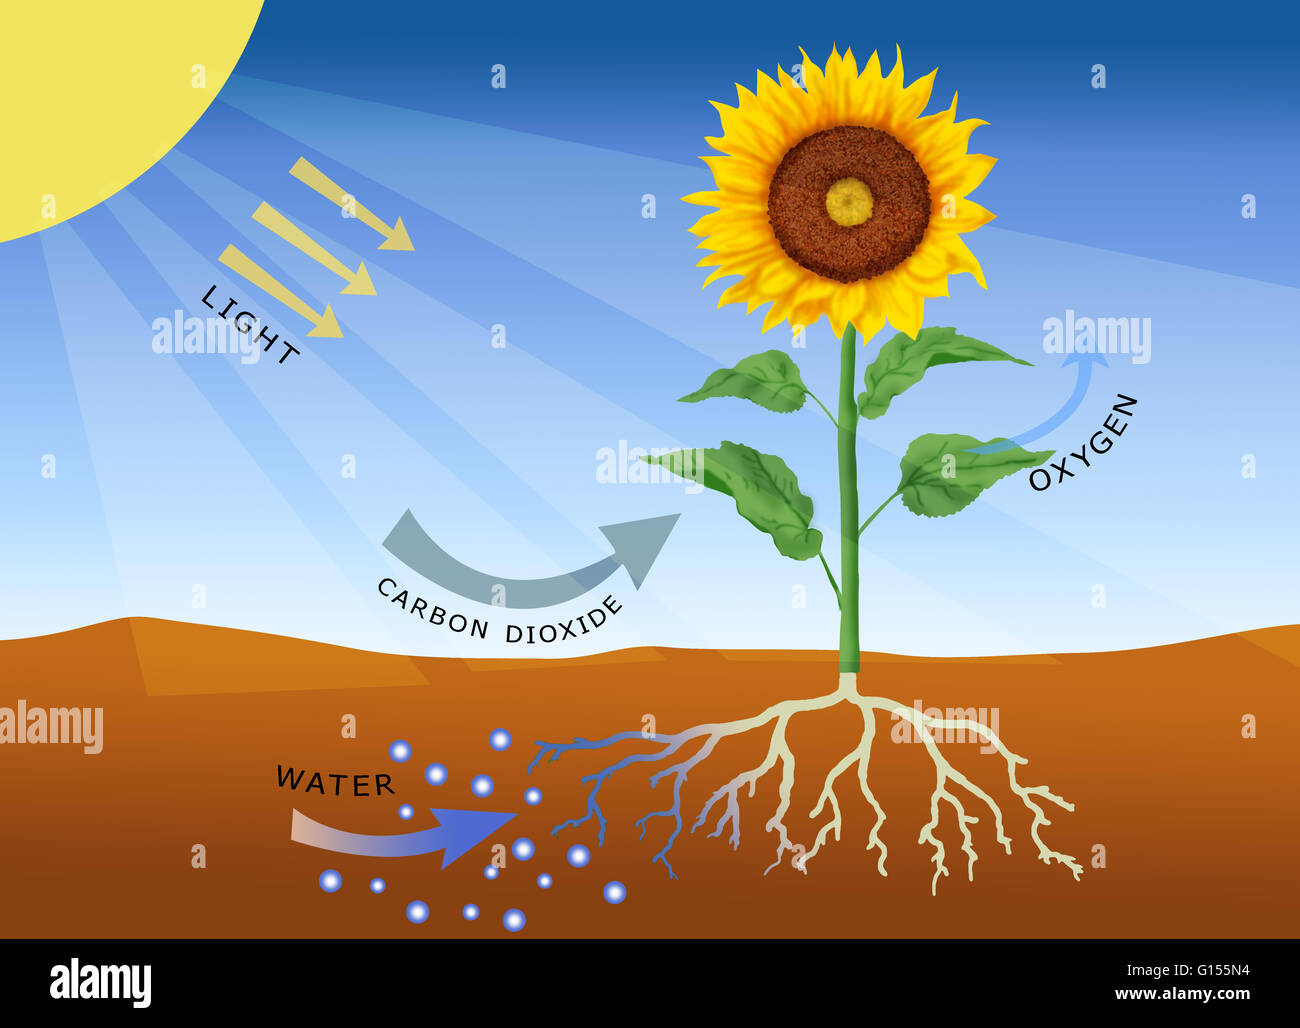 La fotosintesi, computer grafica. La fotosintesi è il processo mediante il quale la maggior parte delle piante (così come le alghe e alcuni batteri) convertono la luce solare in energia chimica. Questa energia viene utilizzata per produrre carboidrati, quali amido, che viene immagazzinato e utilizzato per crescere Foto Stock